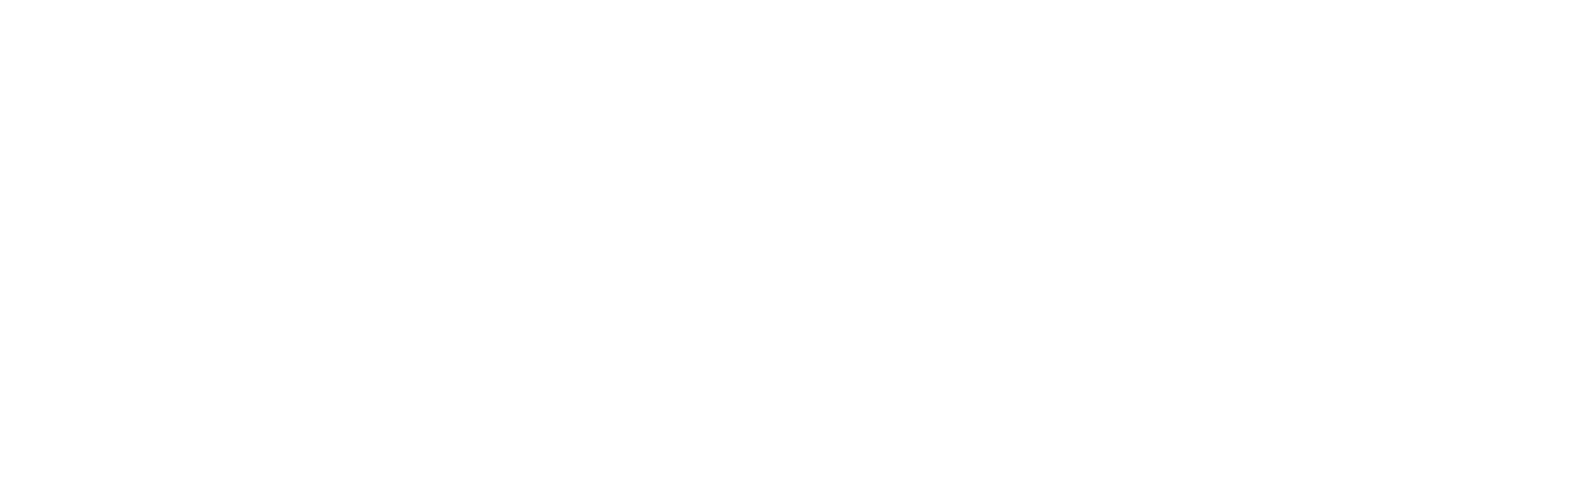 Dassault Systèmes logo grand pour les fonds sombres (PNG transparent)